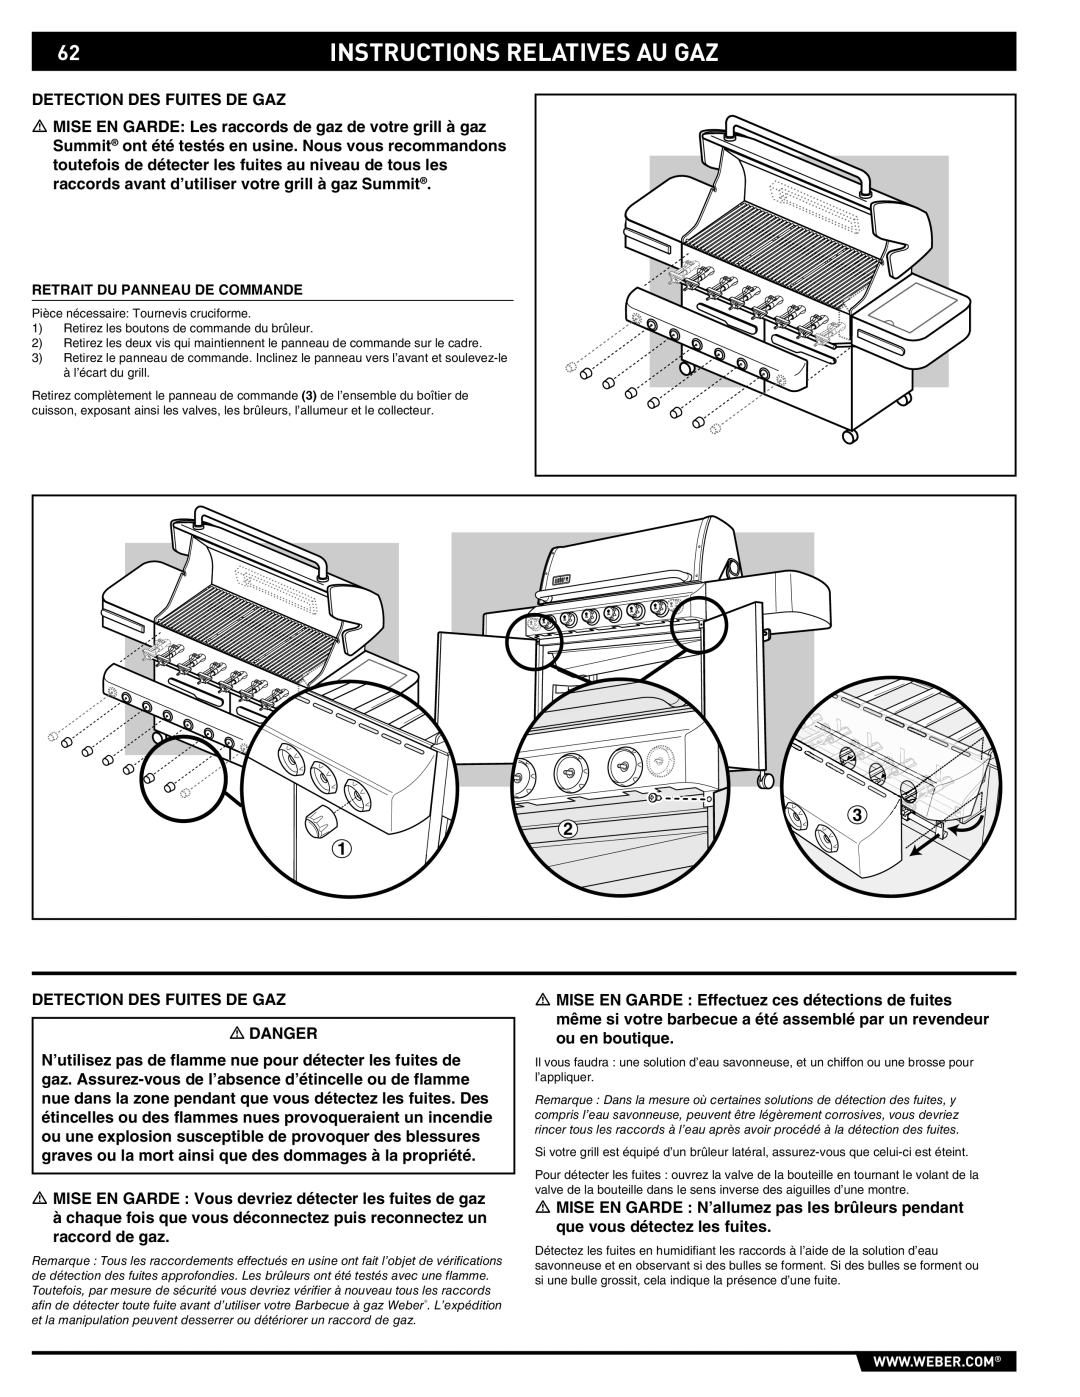 Summit E/S-620/650 manual Detection DES Fuites DE GAZ, Retrait DU Panneau DE Commande 